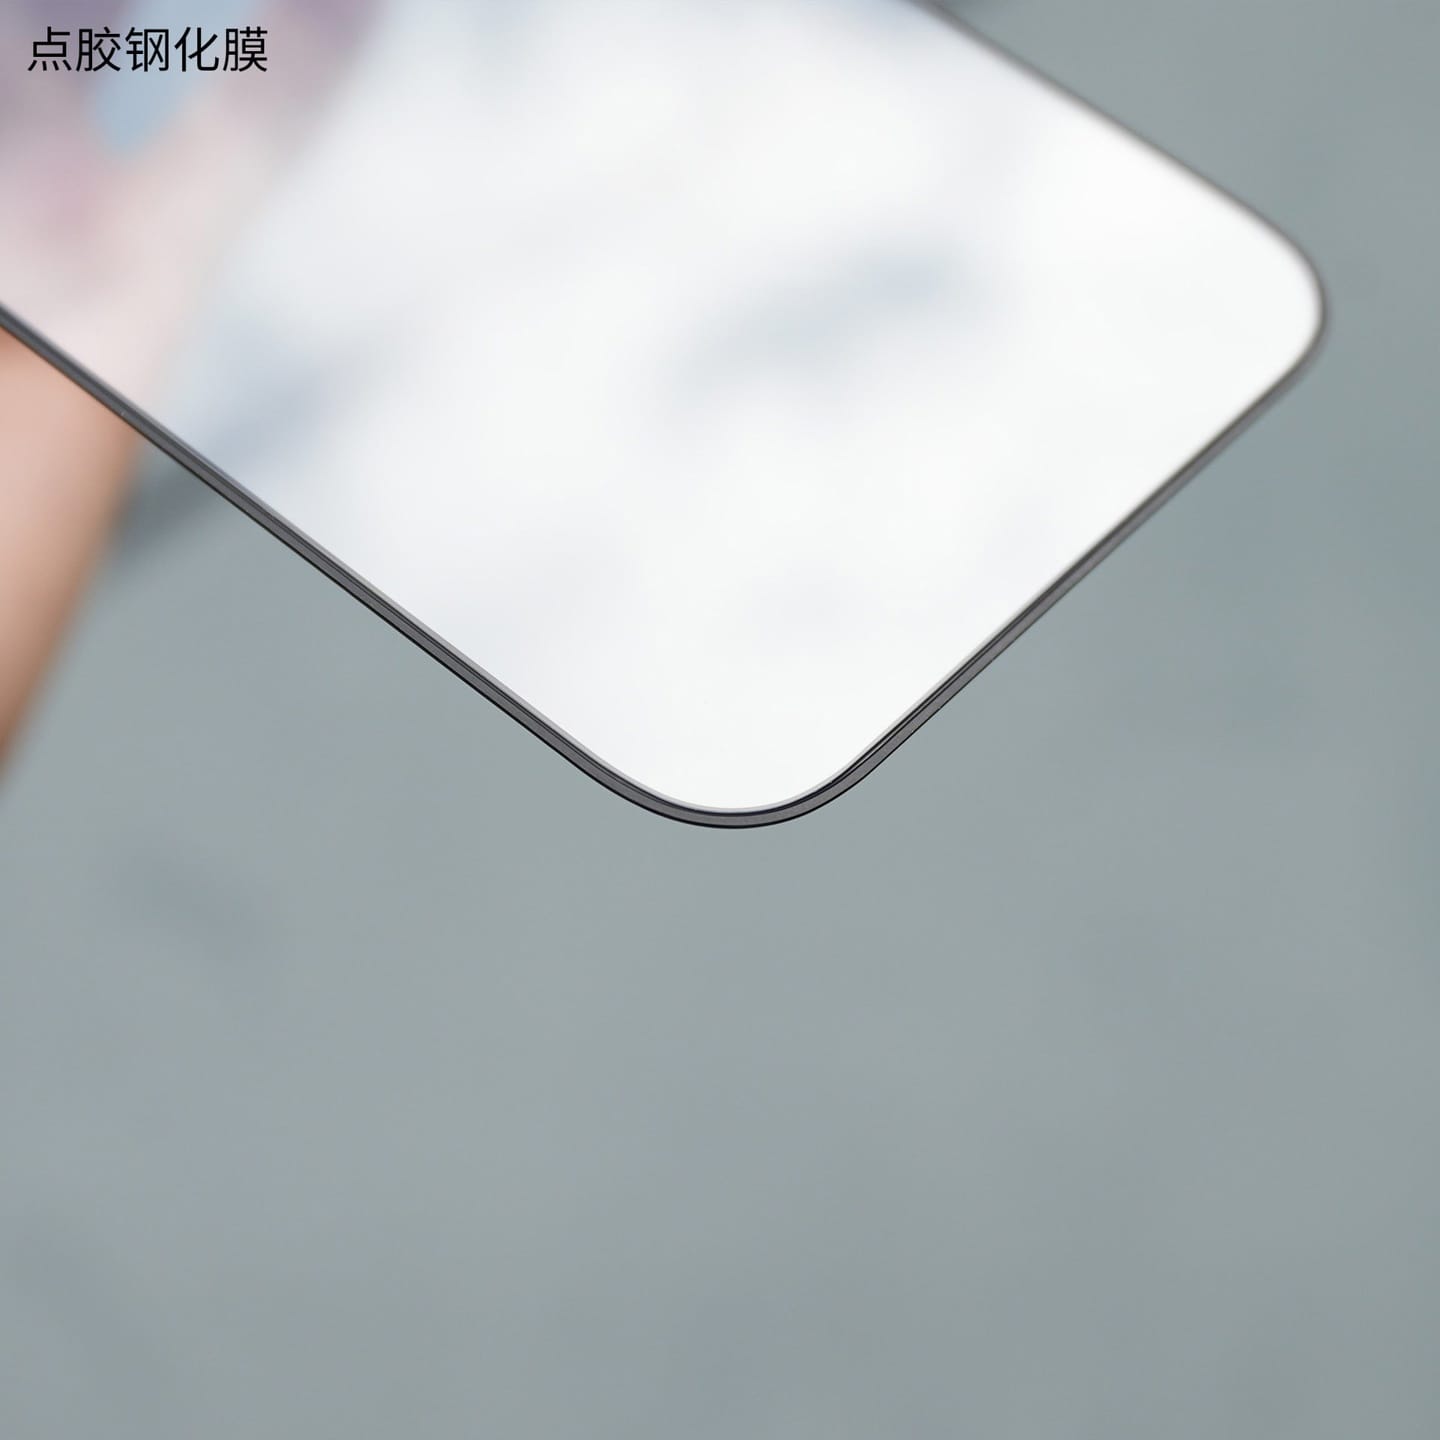 苹果 iPhone 15 系列钢化膜照片曝光